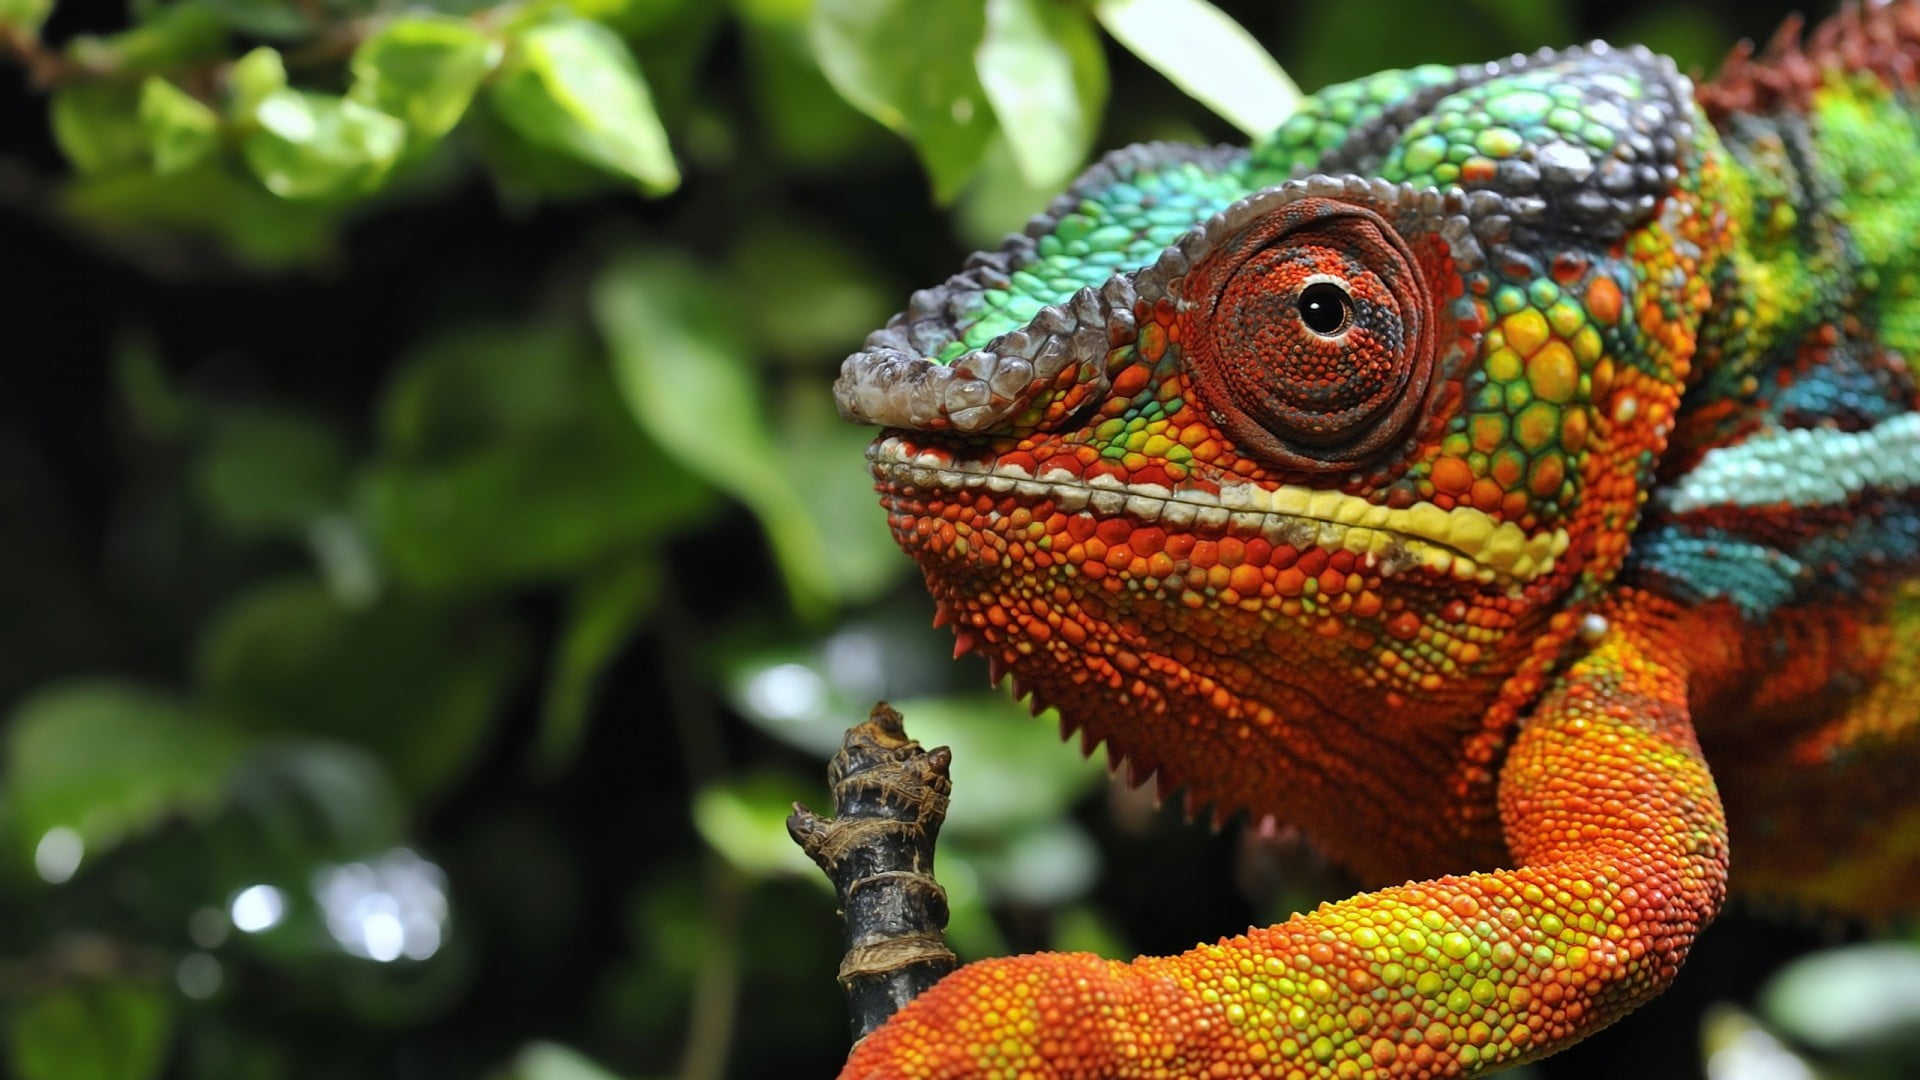 orange and green iguana, nature, animals, wildlife, chameleons